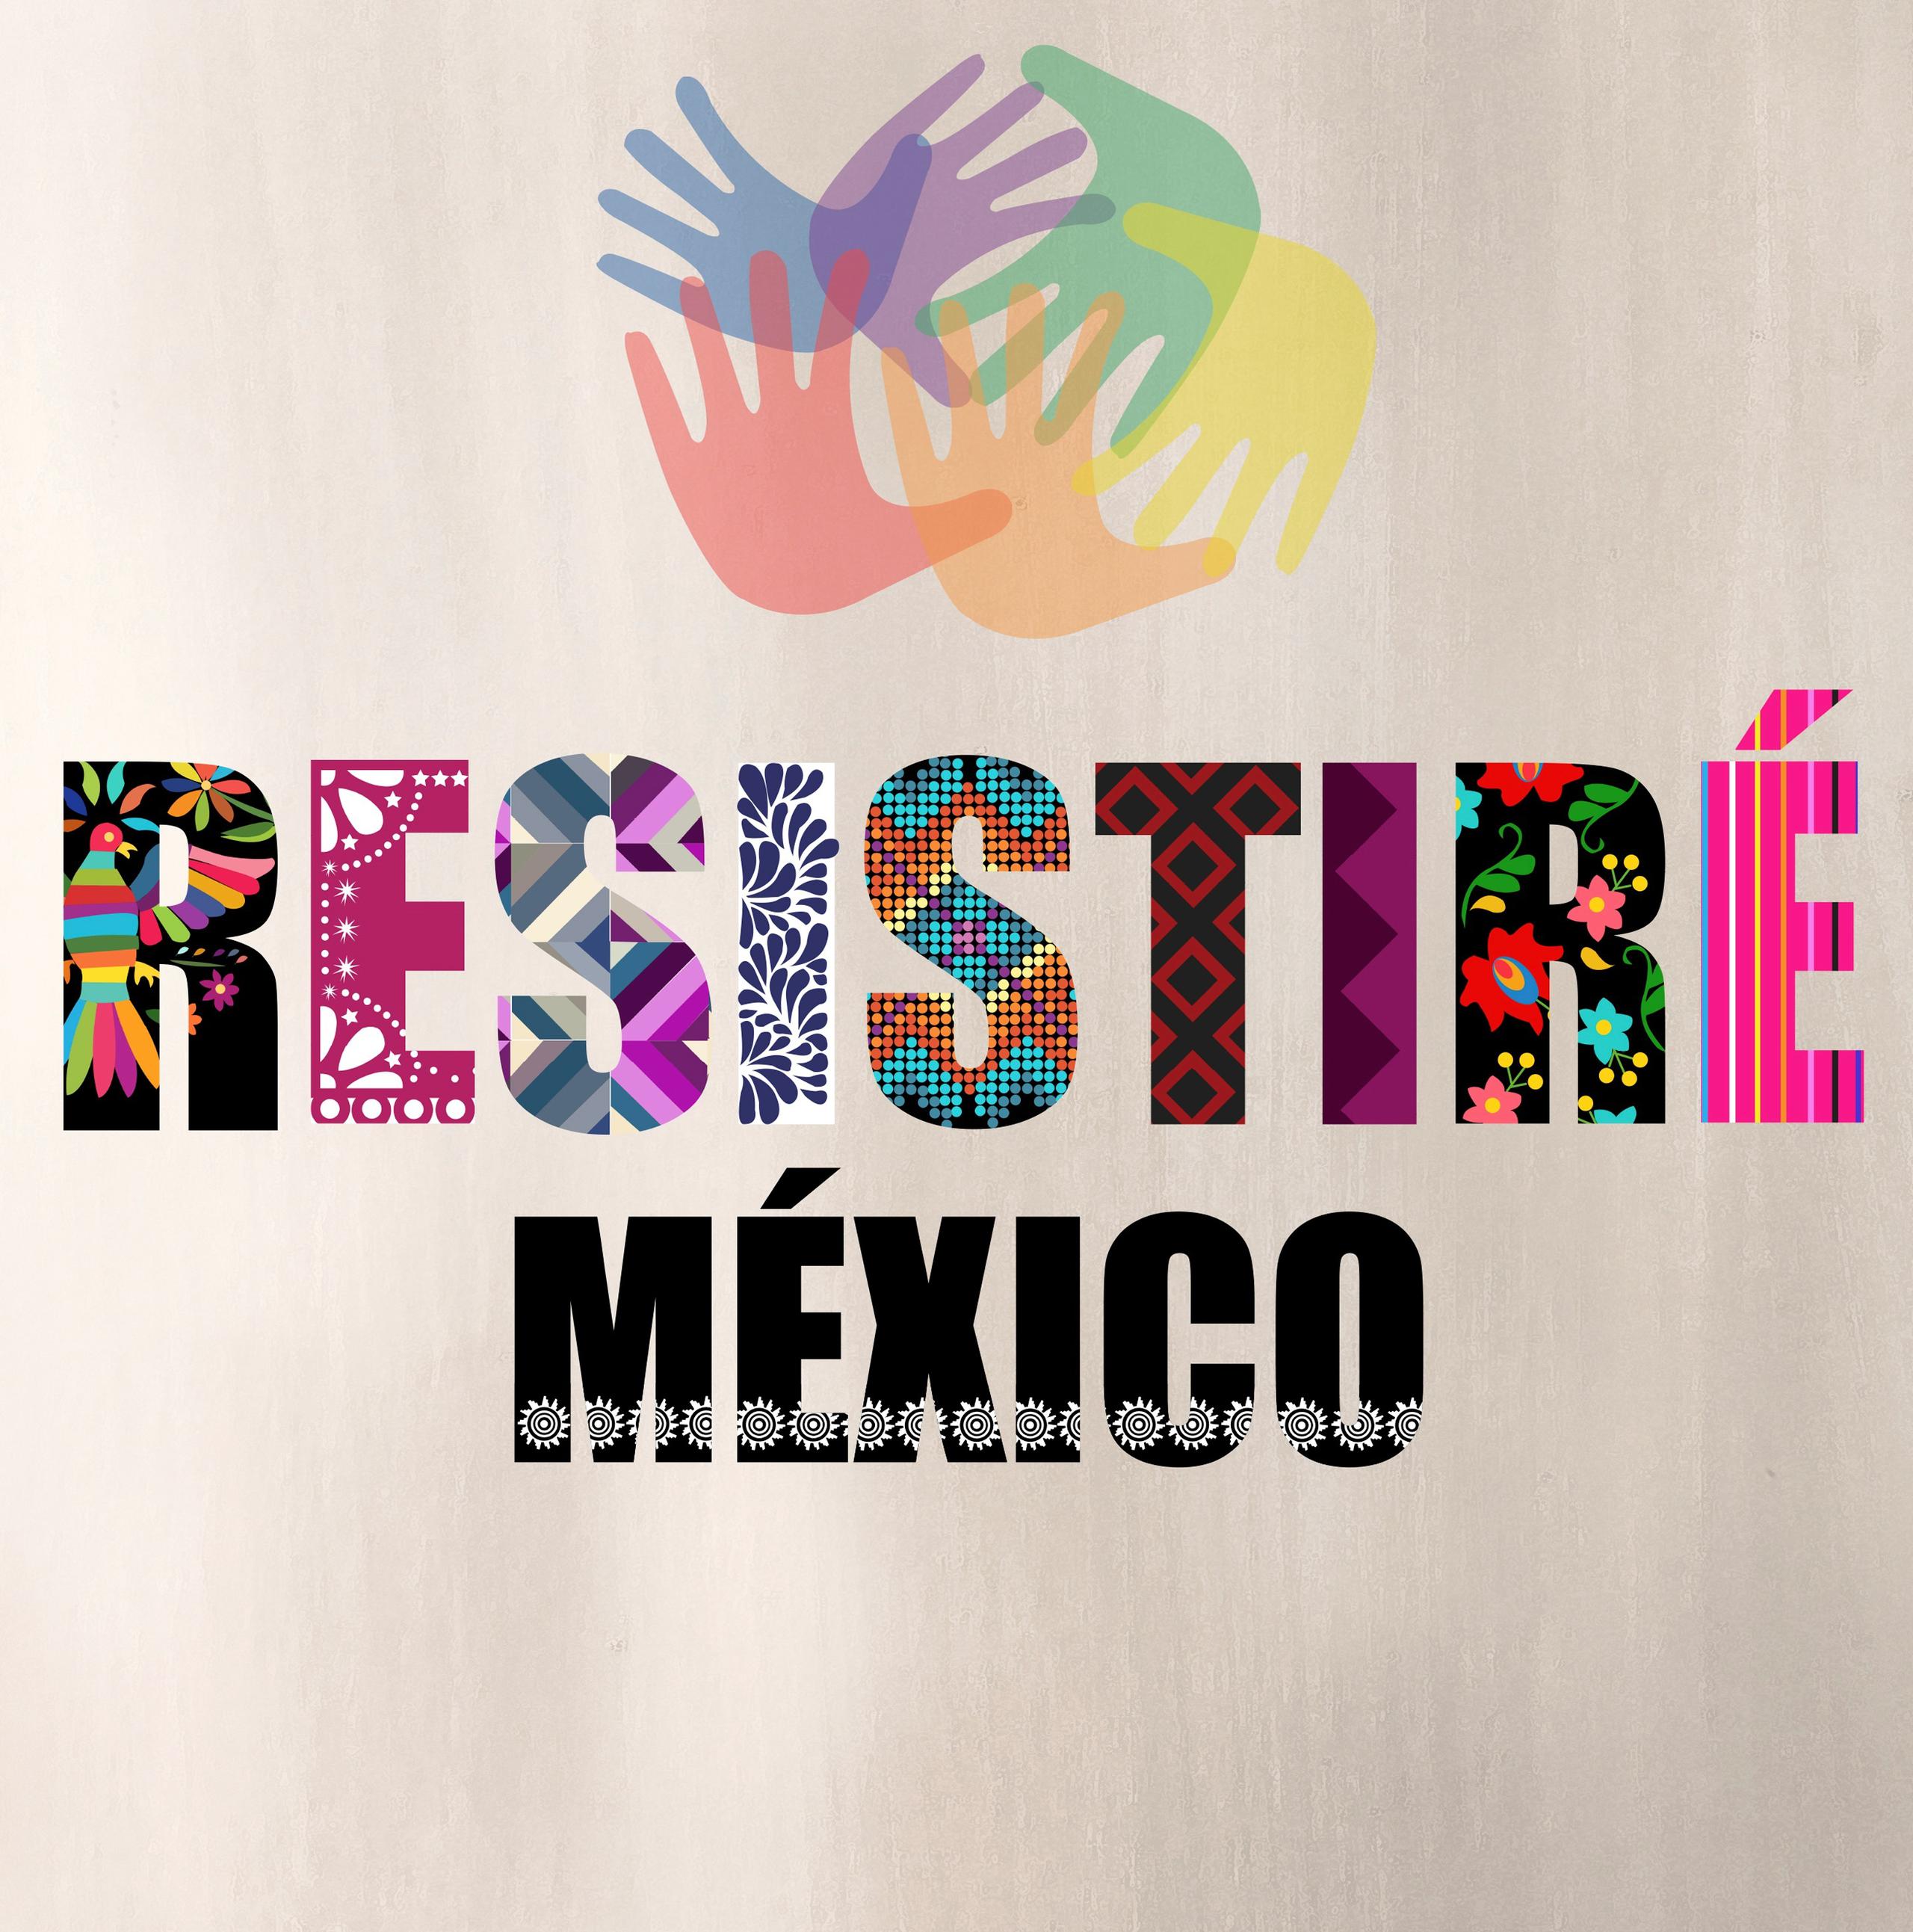 La portada del tema "Resistiré México".